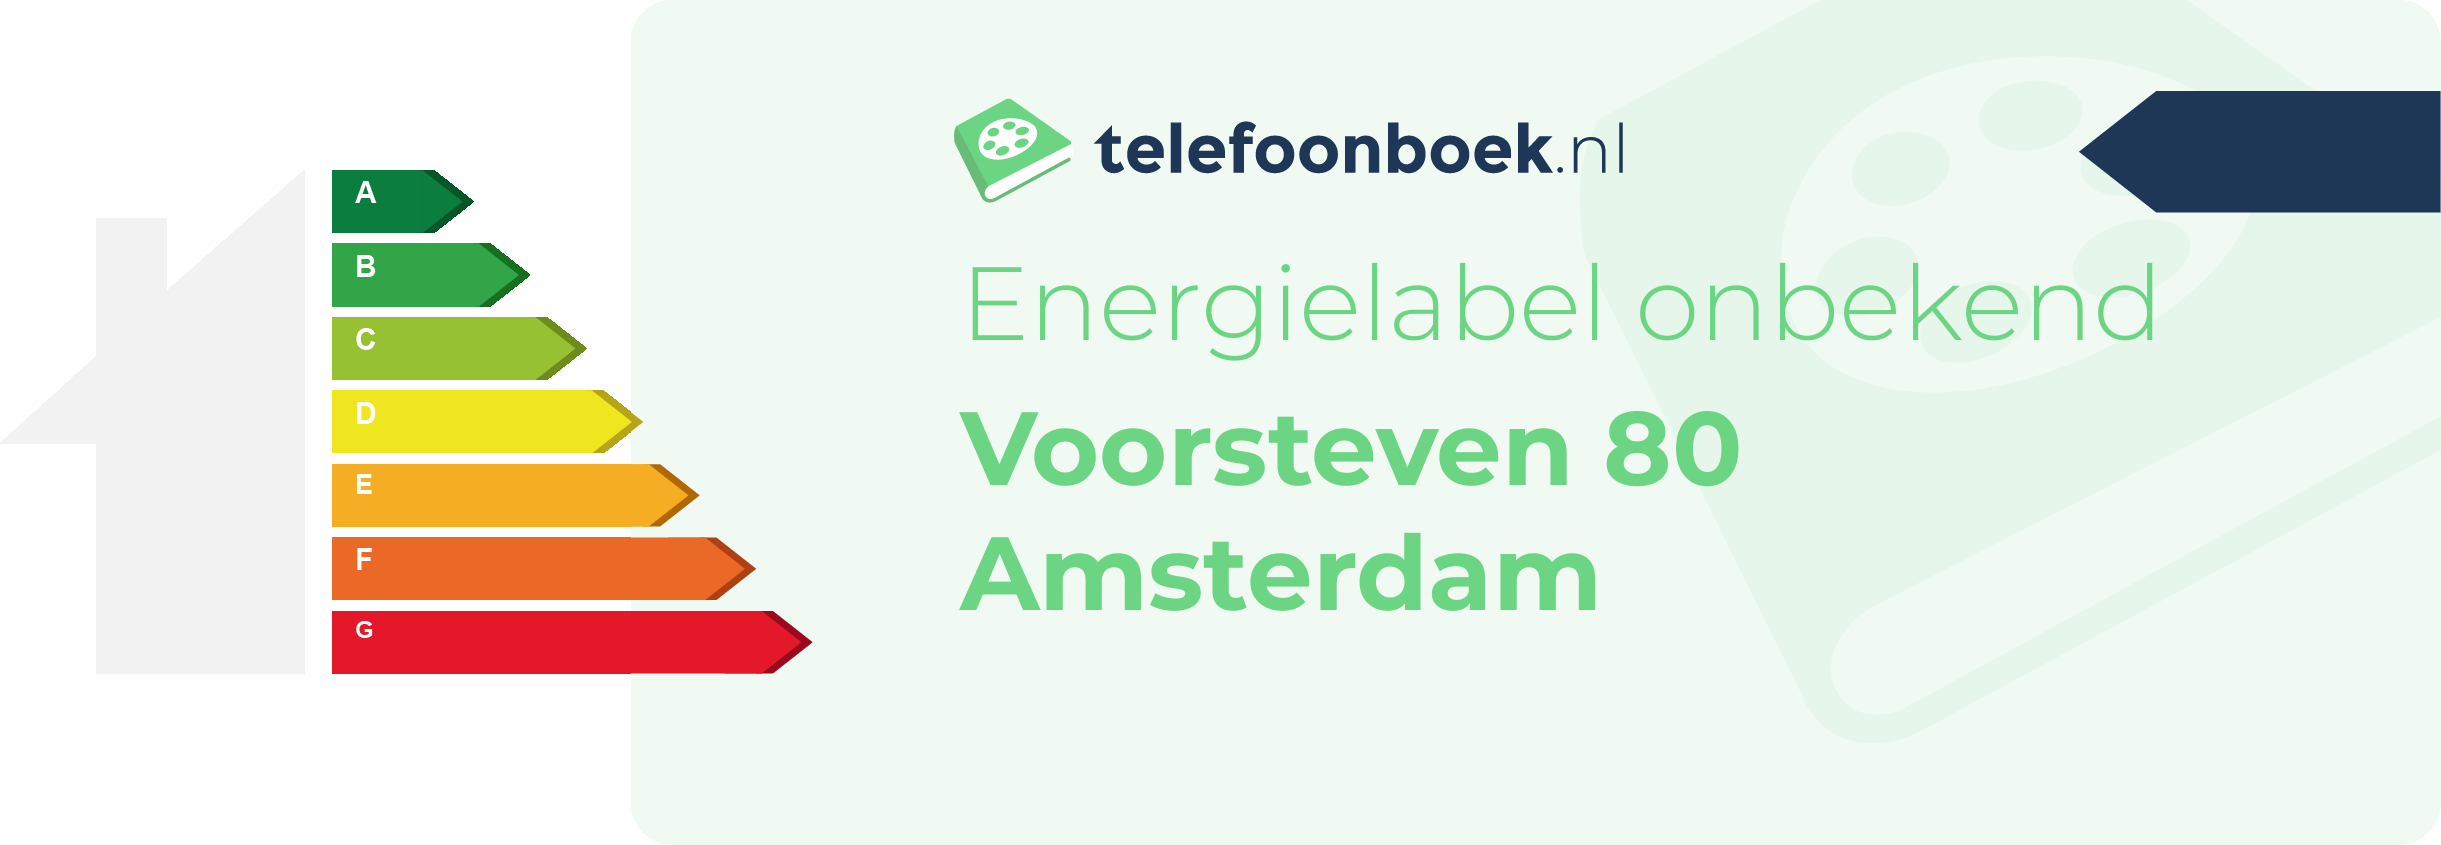 Energielabel Voorsteven 80 Amsterdam